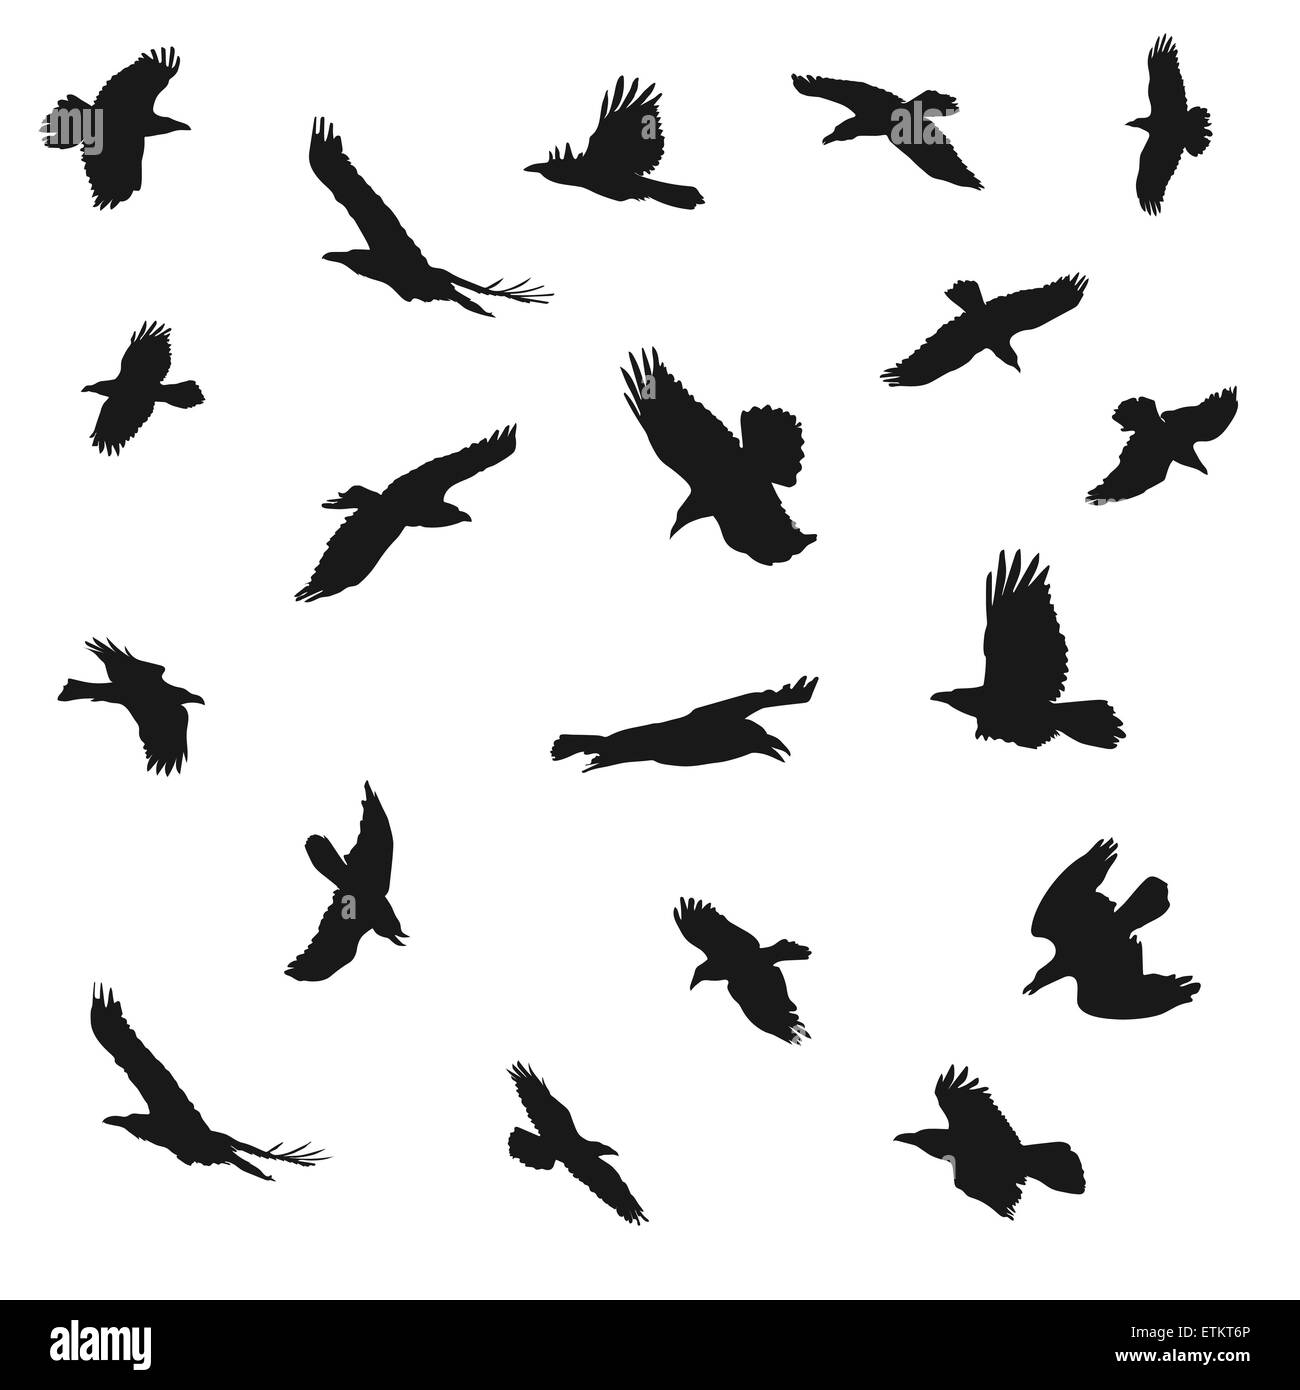 Vektor-Illustration der Adler fliegen Silhouetten. Vorstellungen von Eleganz, Kraft und Freiheit. Stock Vektor